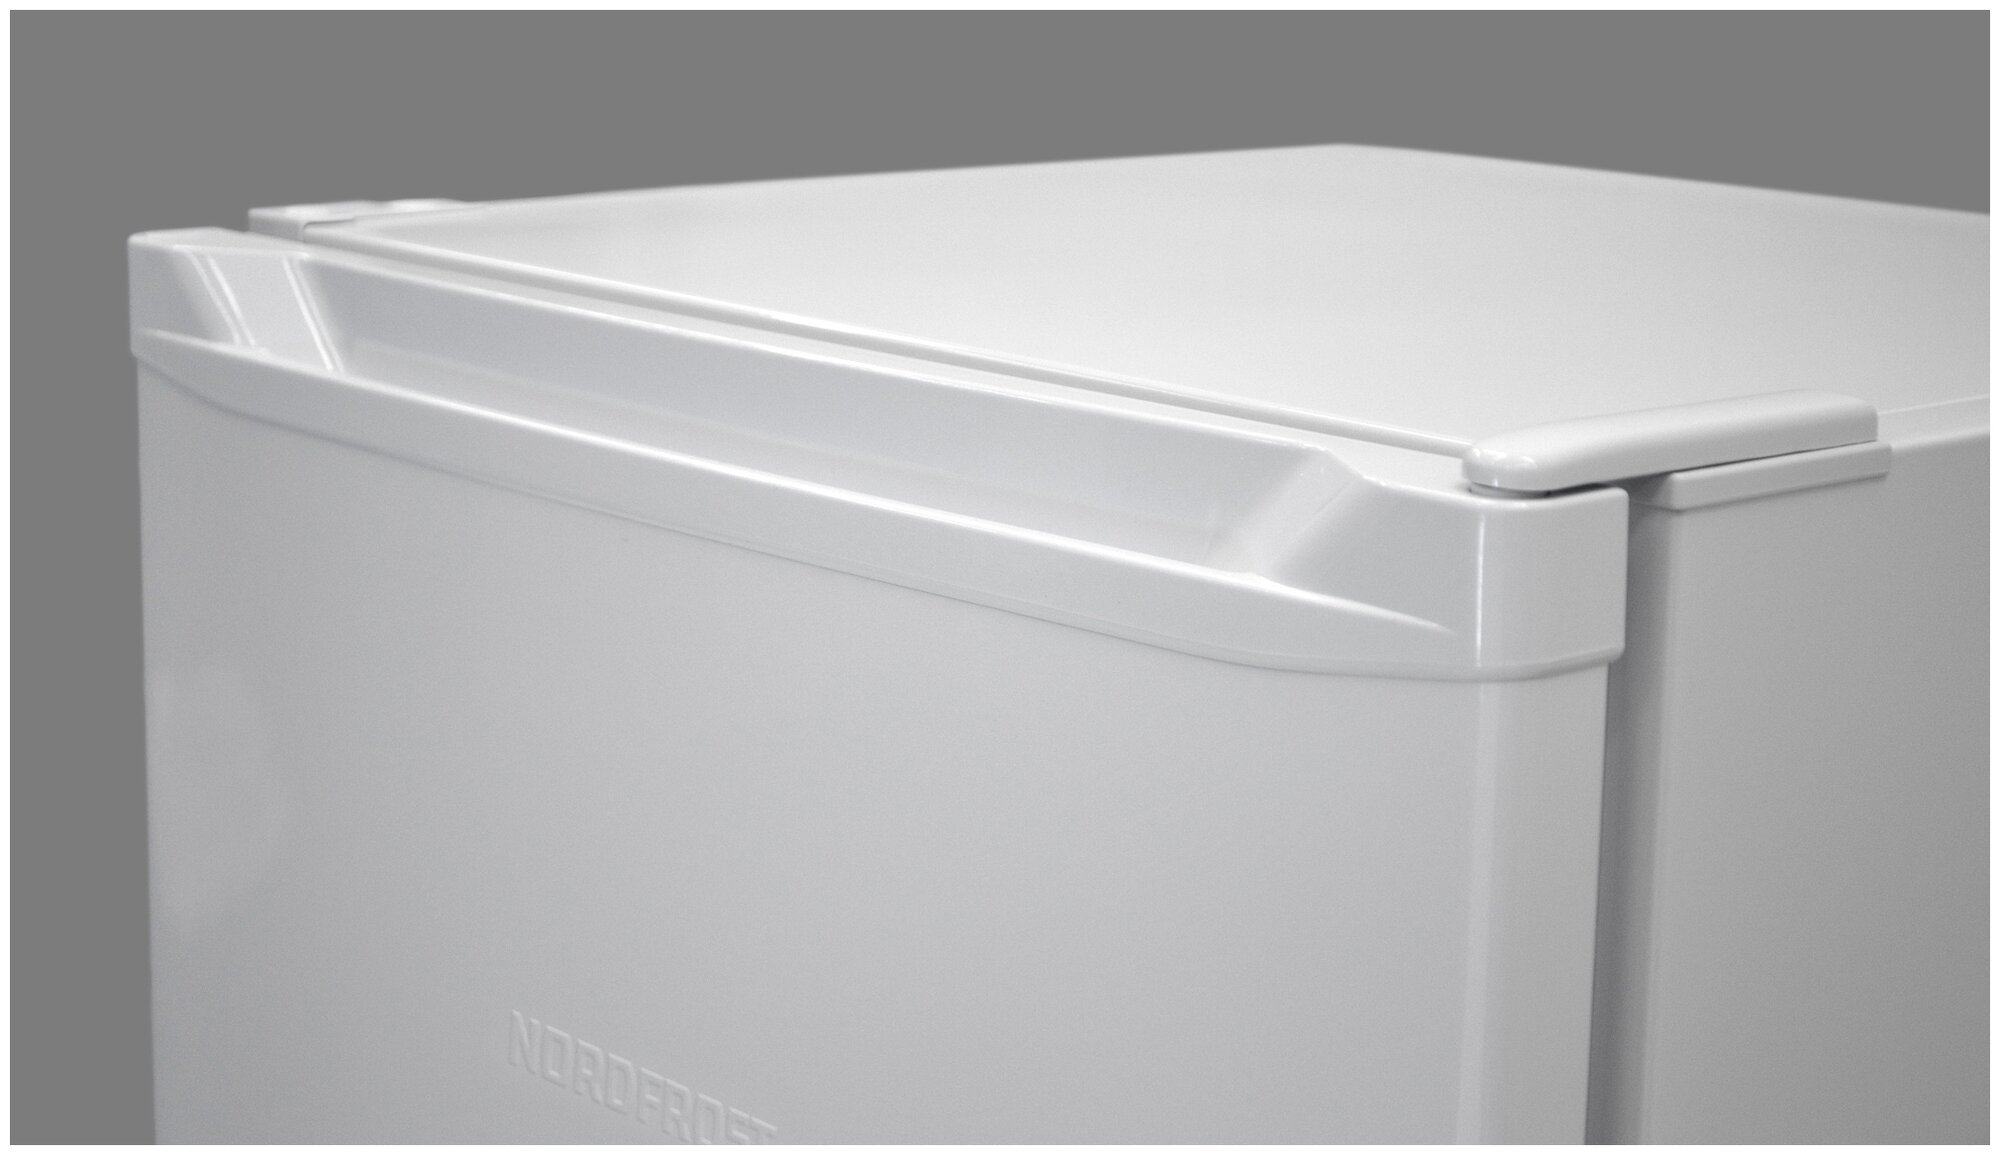 Холодильник NORDFROST NR 247 032, однокамерный, белый [00000259089] - фото №3